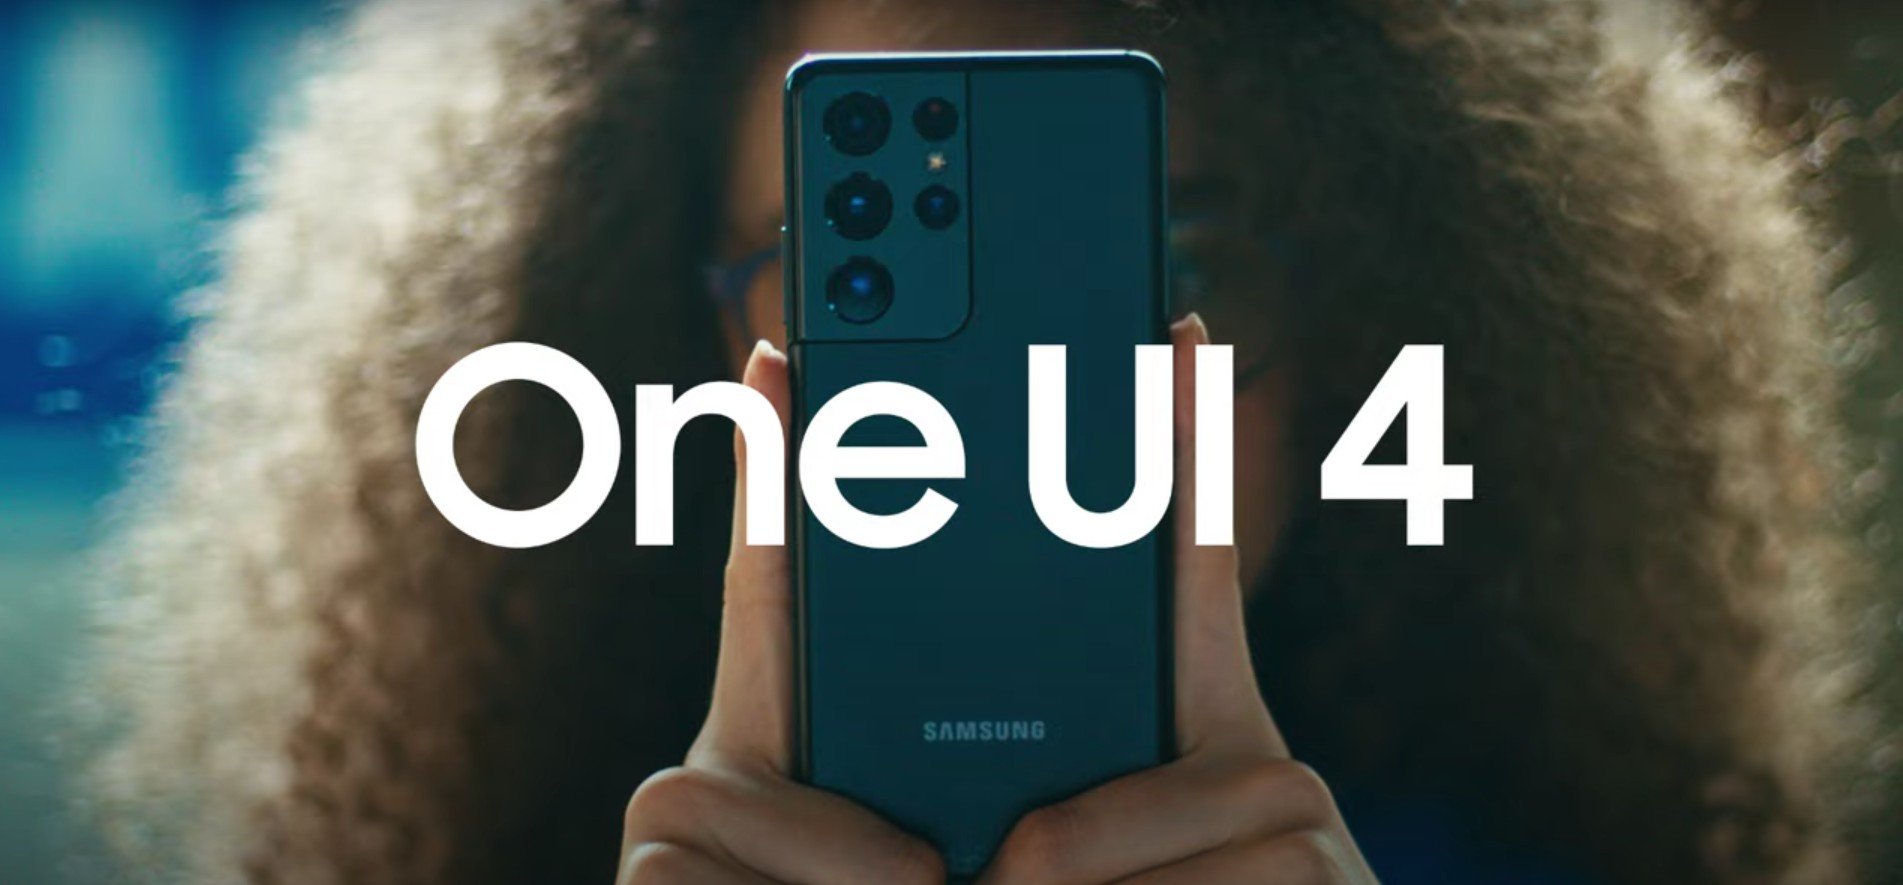 Η Samsung μοιράζεται βίντεο με τις πρώτες πληροφορίες του επερχόμενου One UI 4